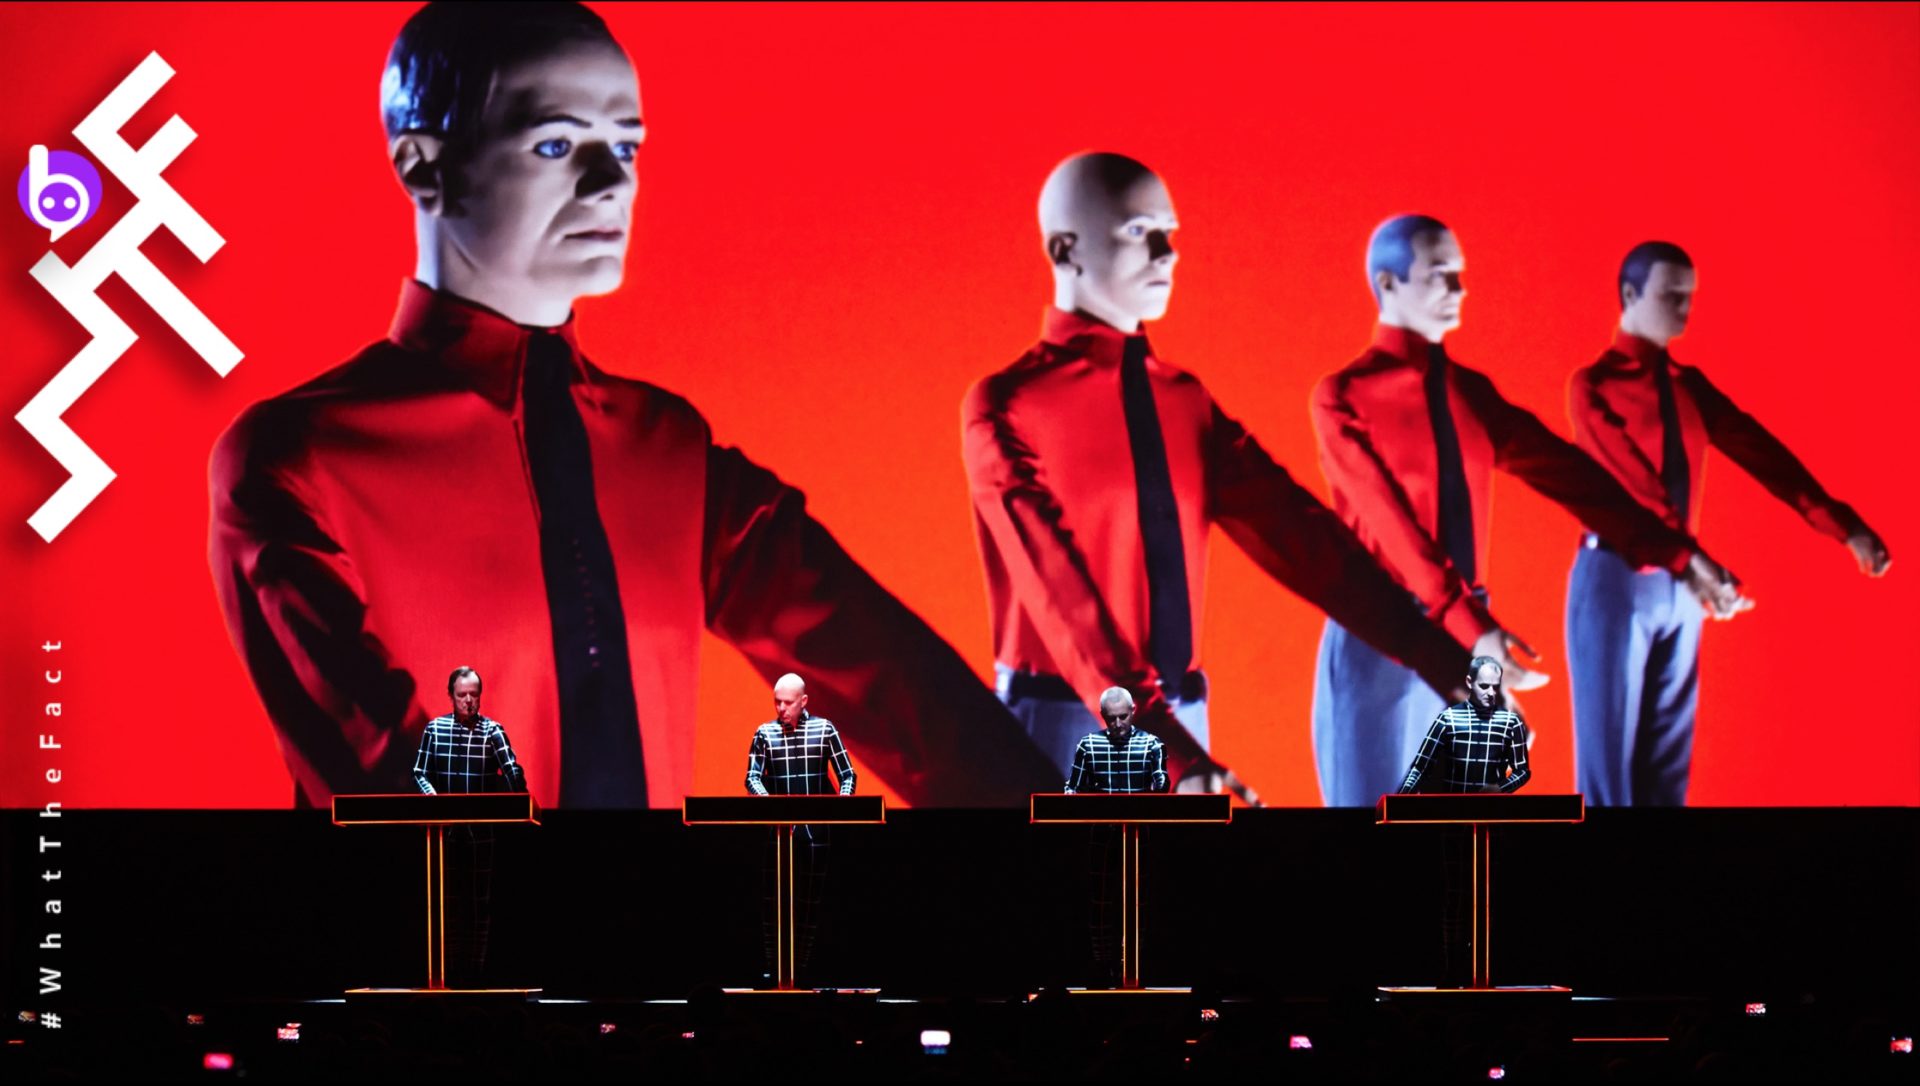 รำลึกการจากไปของ Florian Schneider ผ่าน 10 บทเพลงสุดล้ำจากวงดนตรีอิเล็กทรอนิกส์ระดับตำนาน Kraftwerk